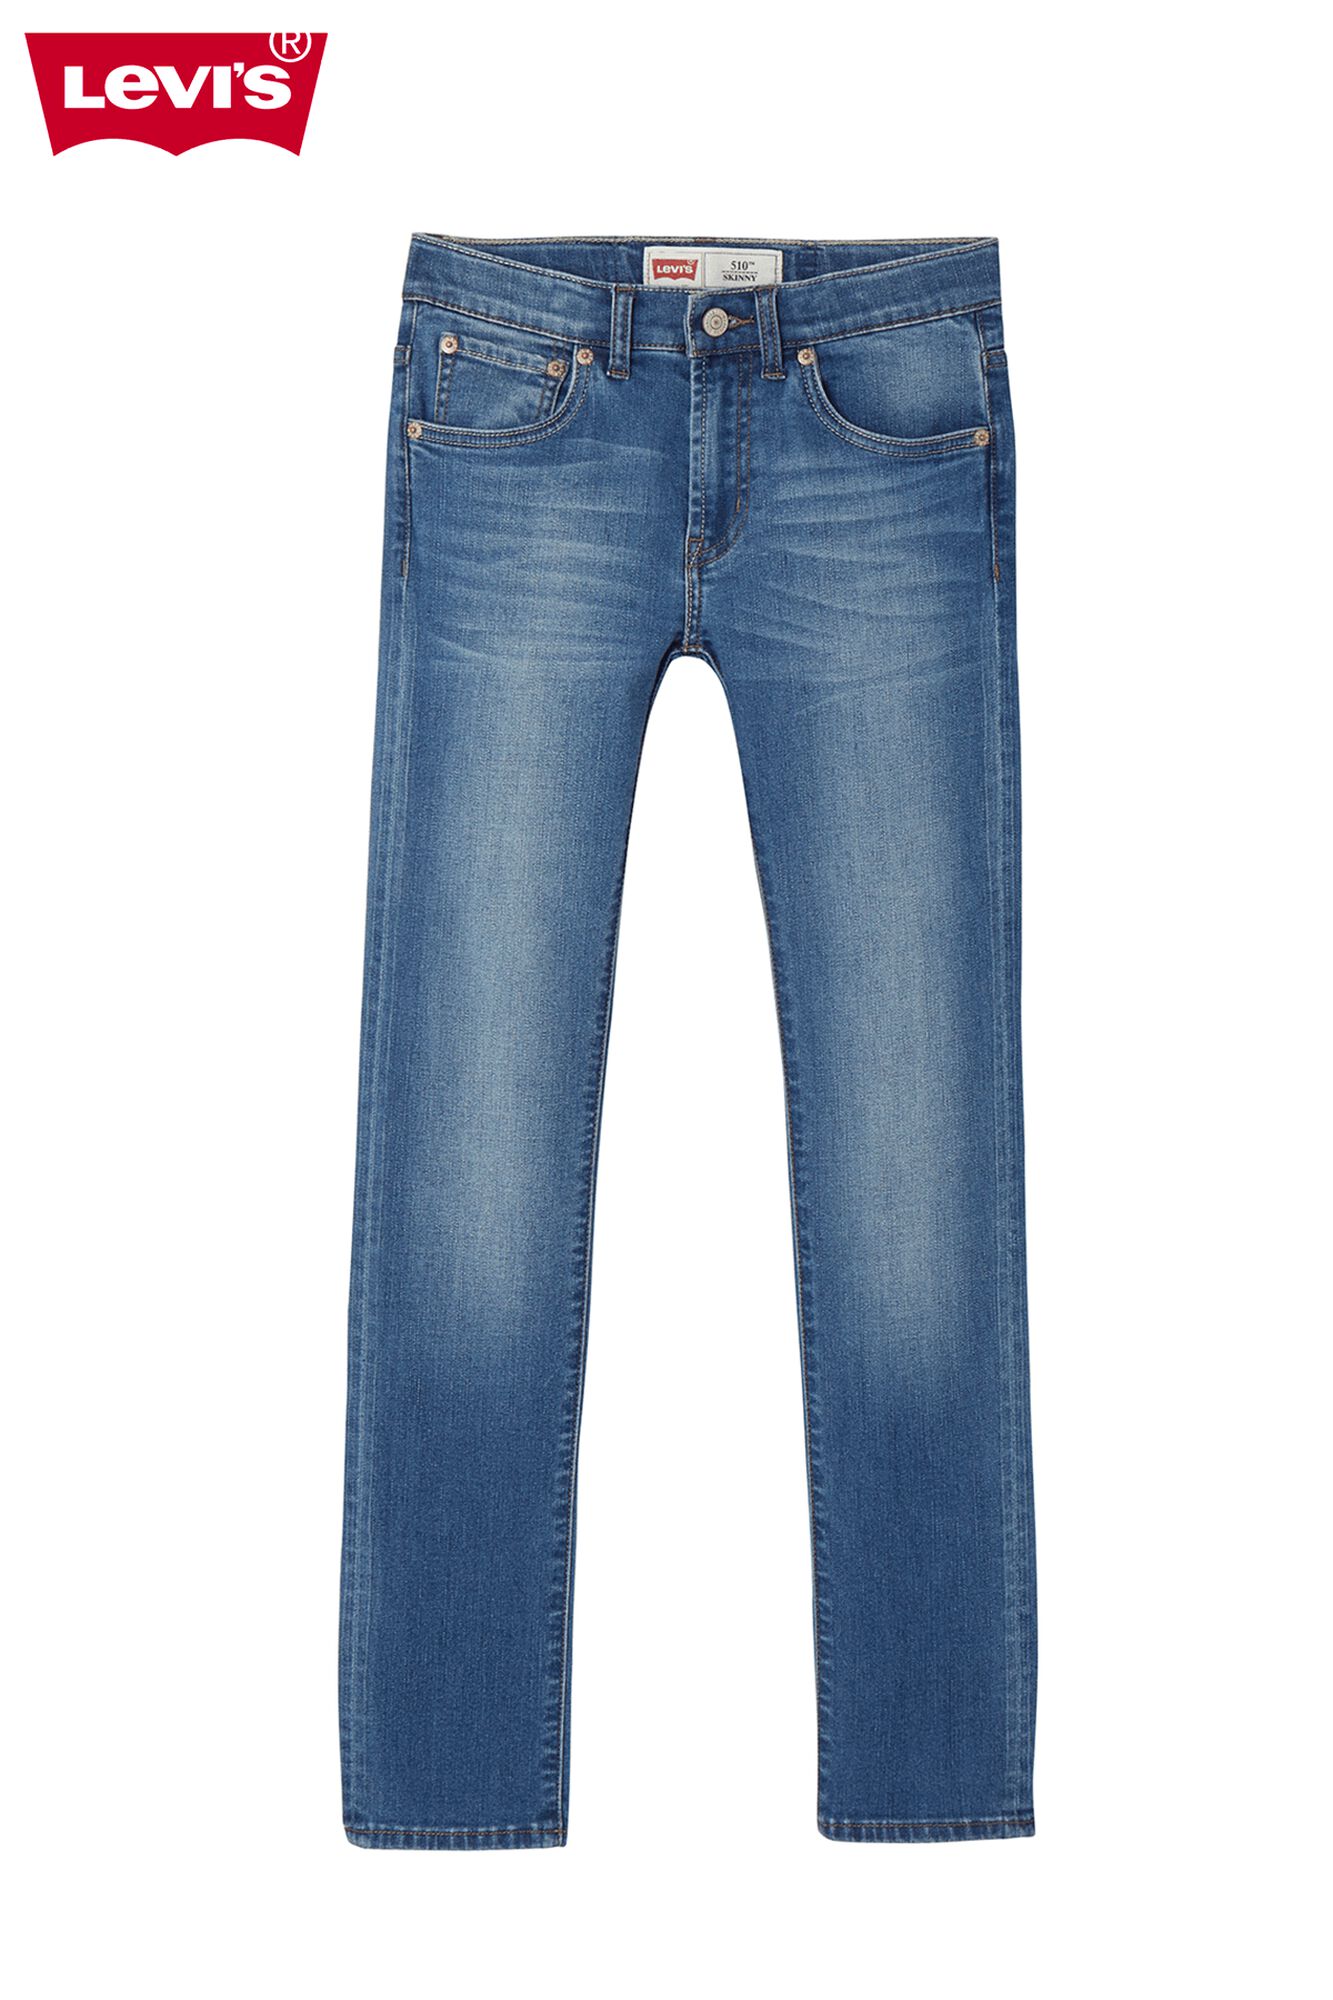 Boys Jeans Levi's 510 Classic Blue Buy Online